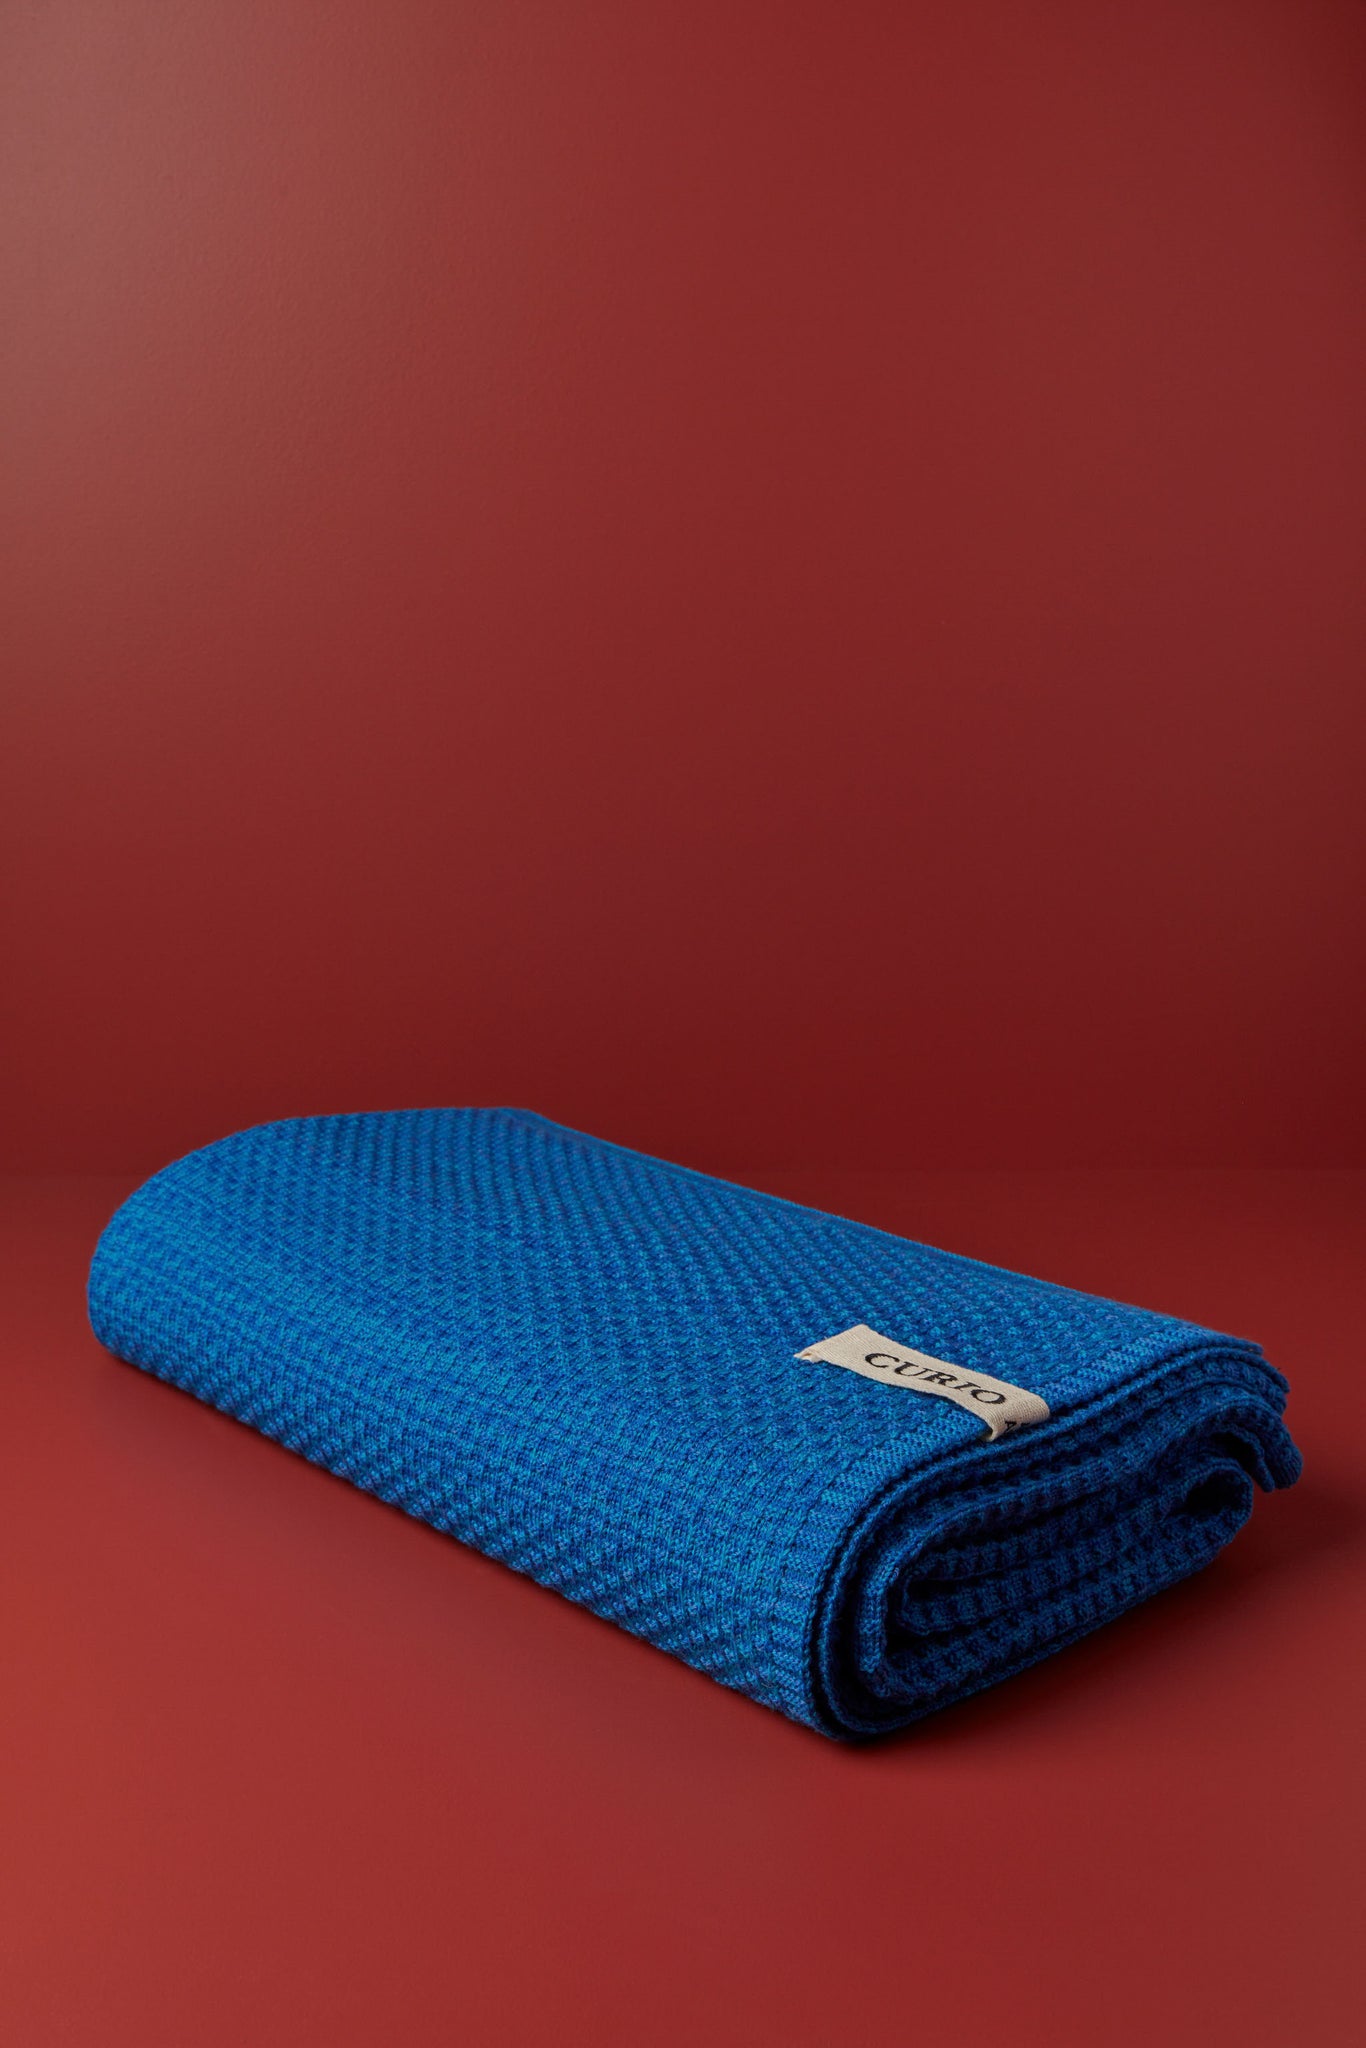 Curio - Merino Wool Queen Blanket, Yves Klein Blue Texture